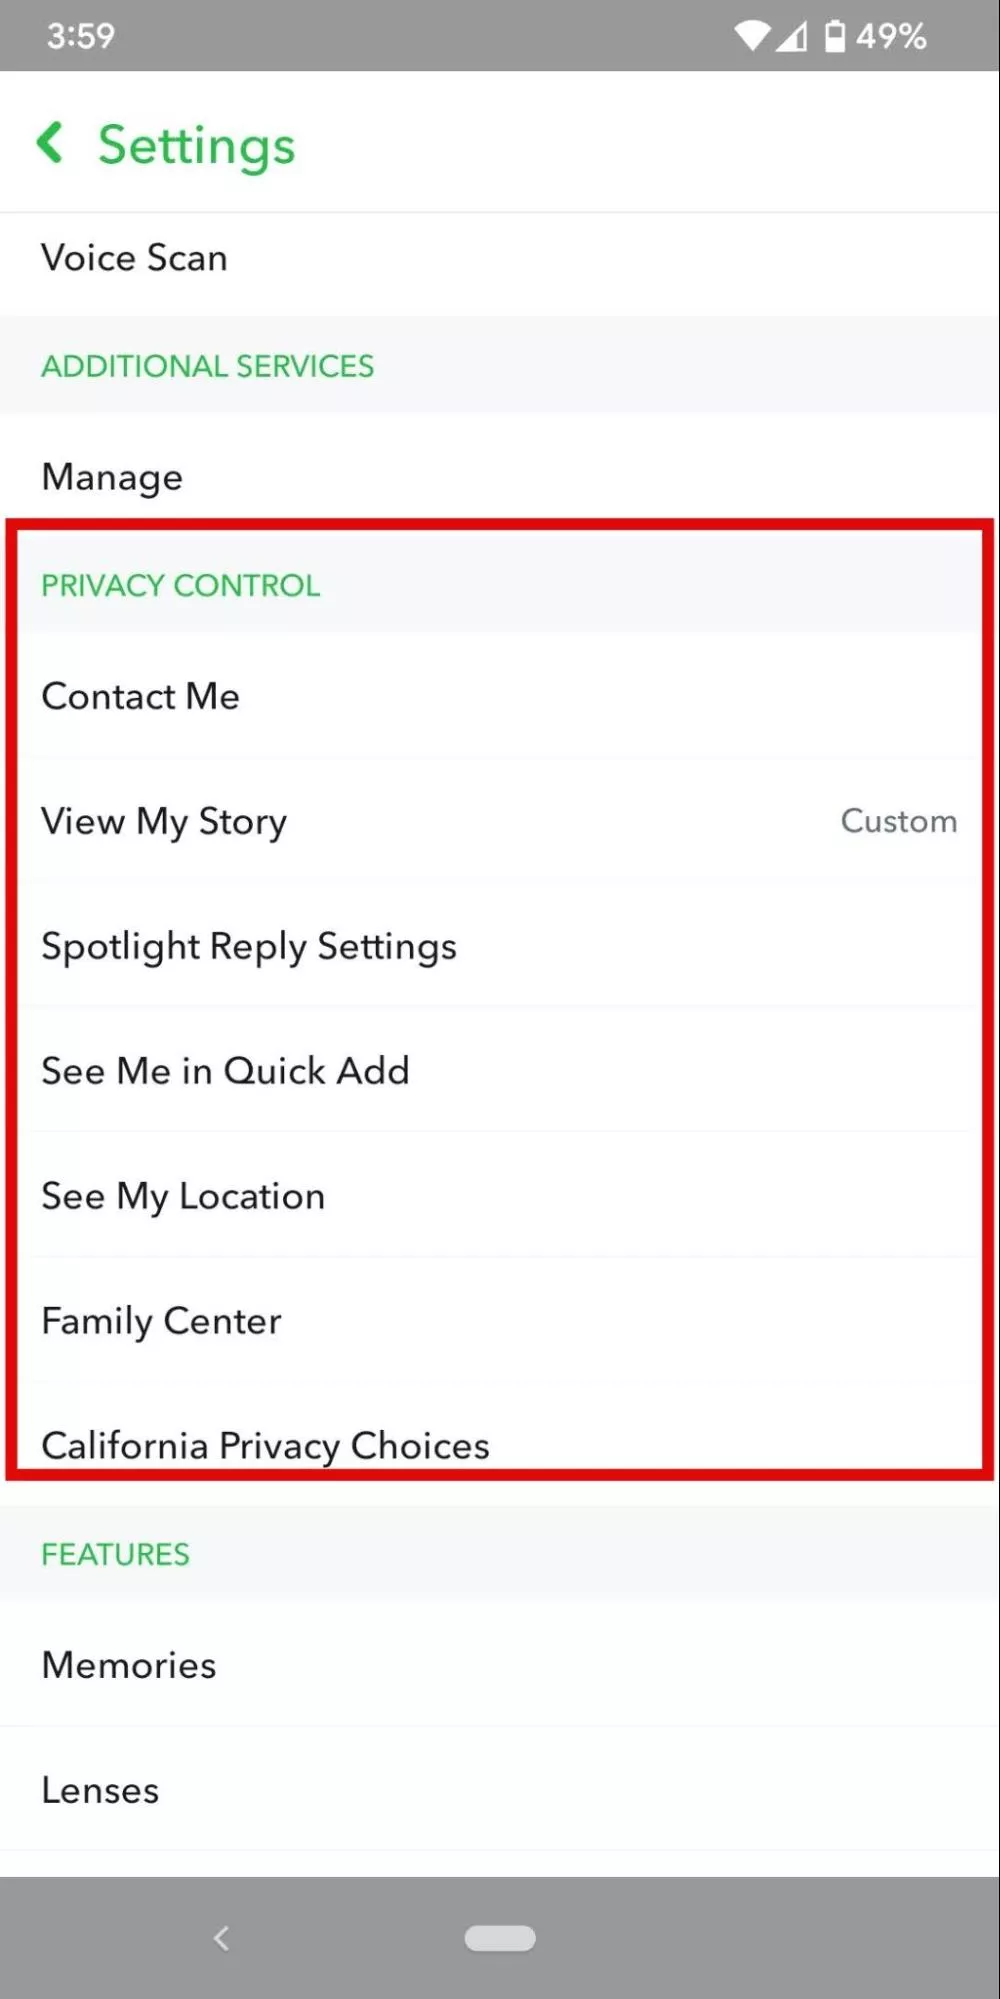 צילום מסך של הגדרות אפליקציות לנייד Snapchat כדי להציג היכן לגשת להגדרות בקרת פרטיות